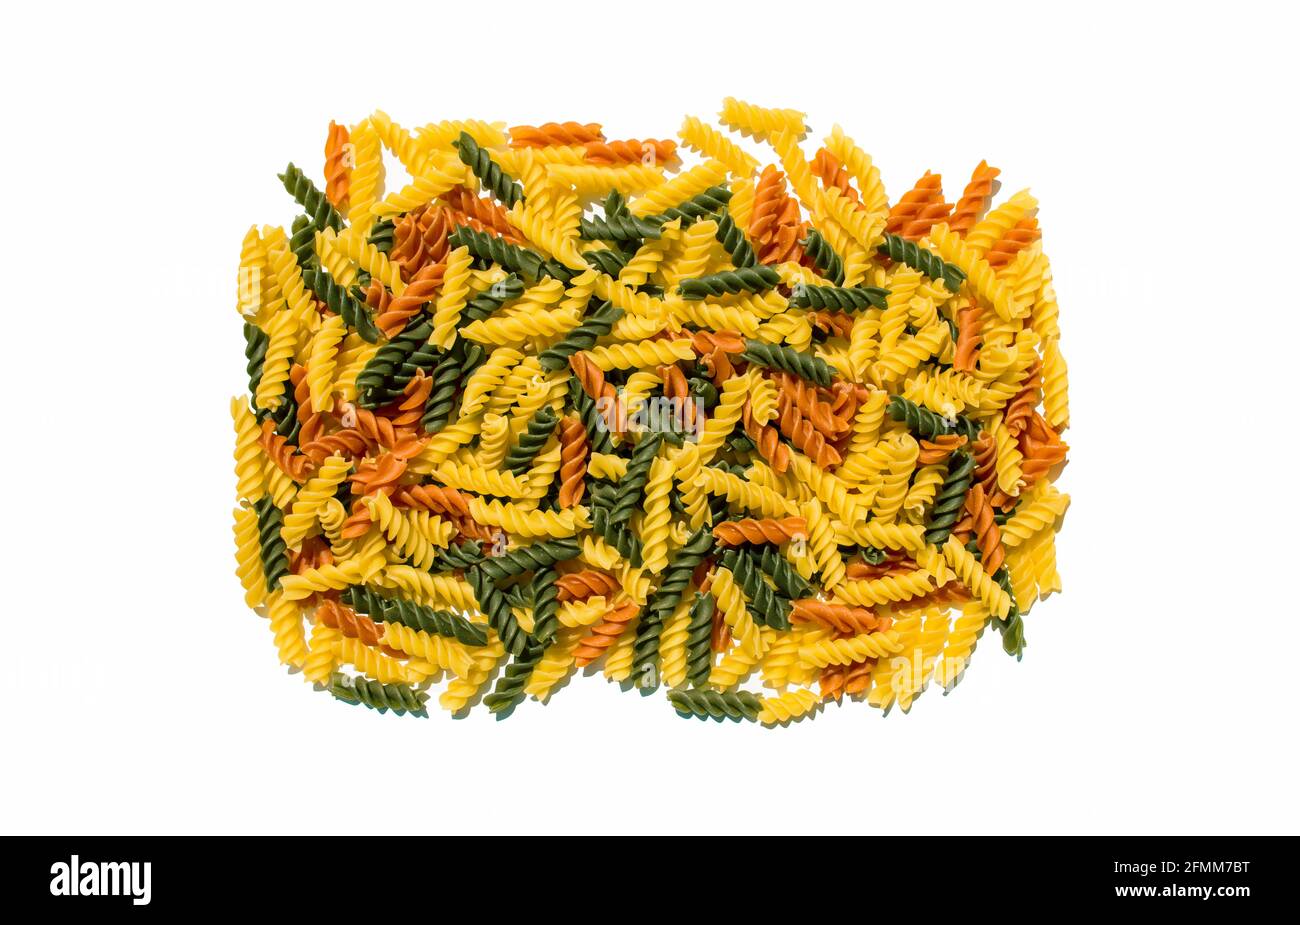 Mehrfarbige lockige Pasta Nudeln Tomate Spinat regelmäßige aromatisierte Gourmet Exotische Bio-Lebensmittel auf einer klaren weißen Tischszene Stockfoto